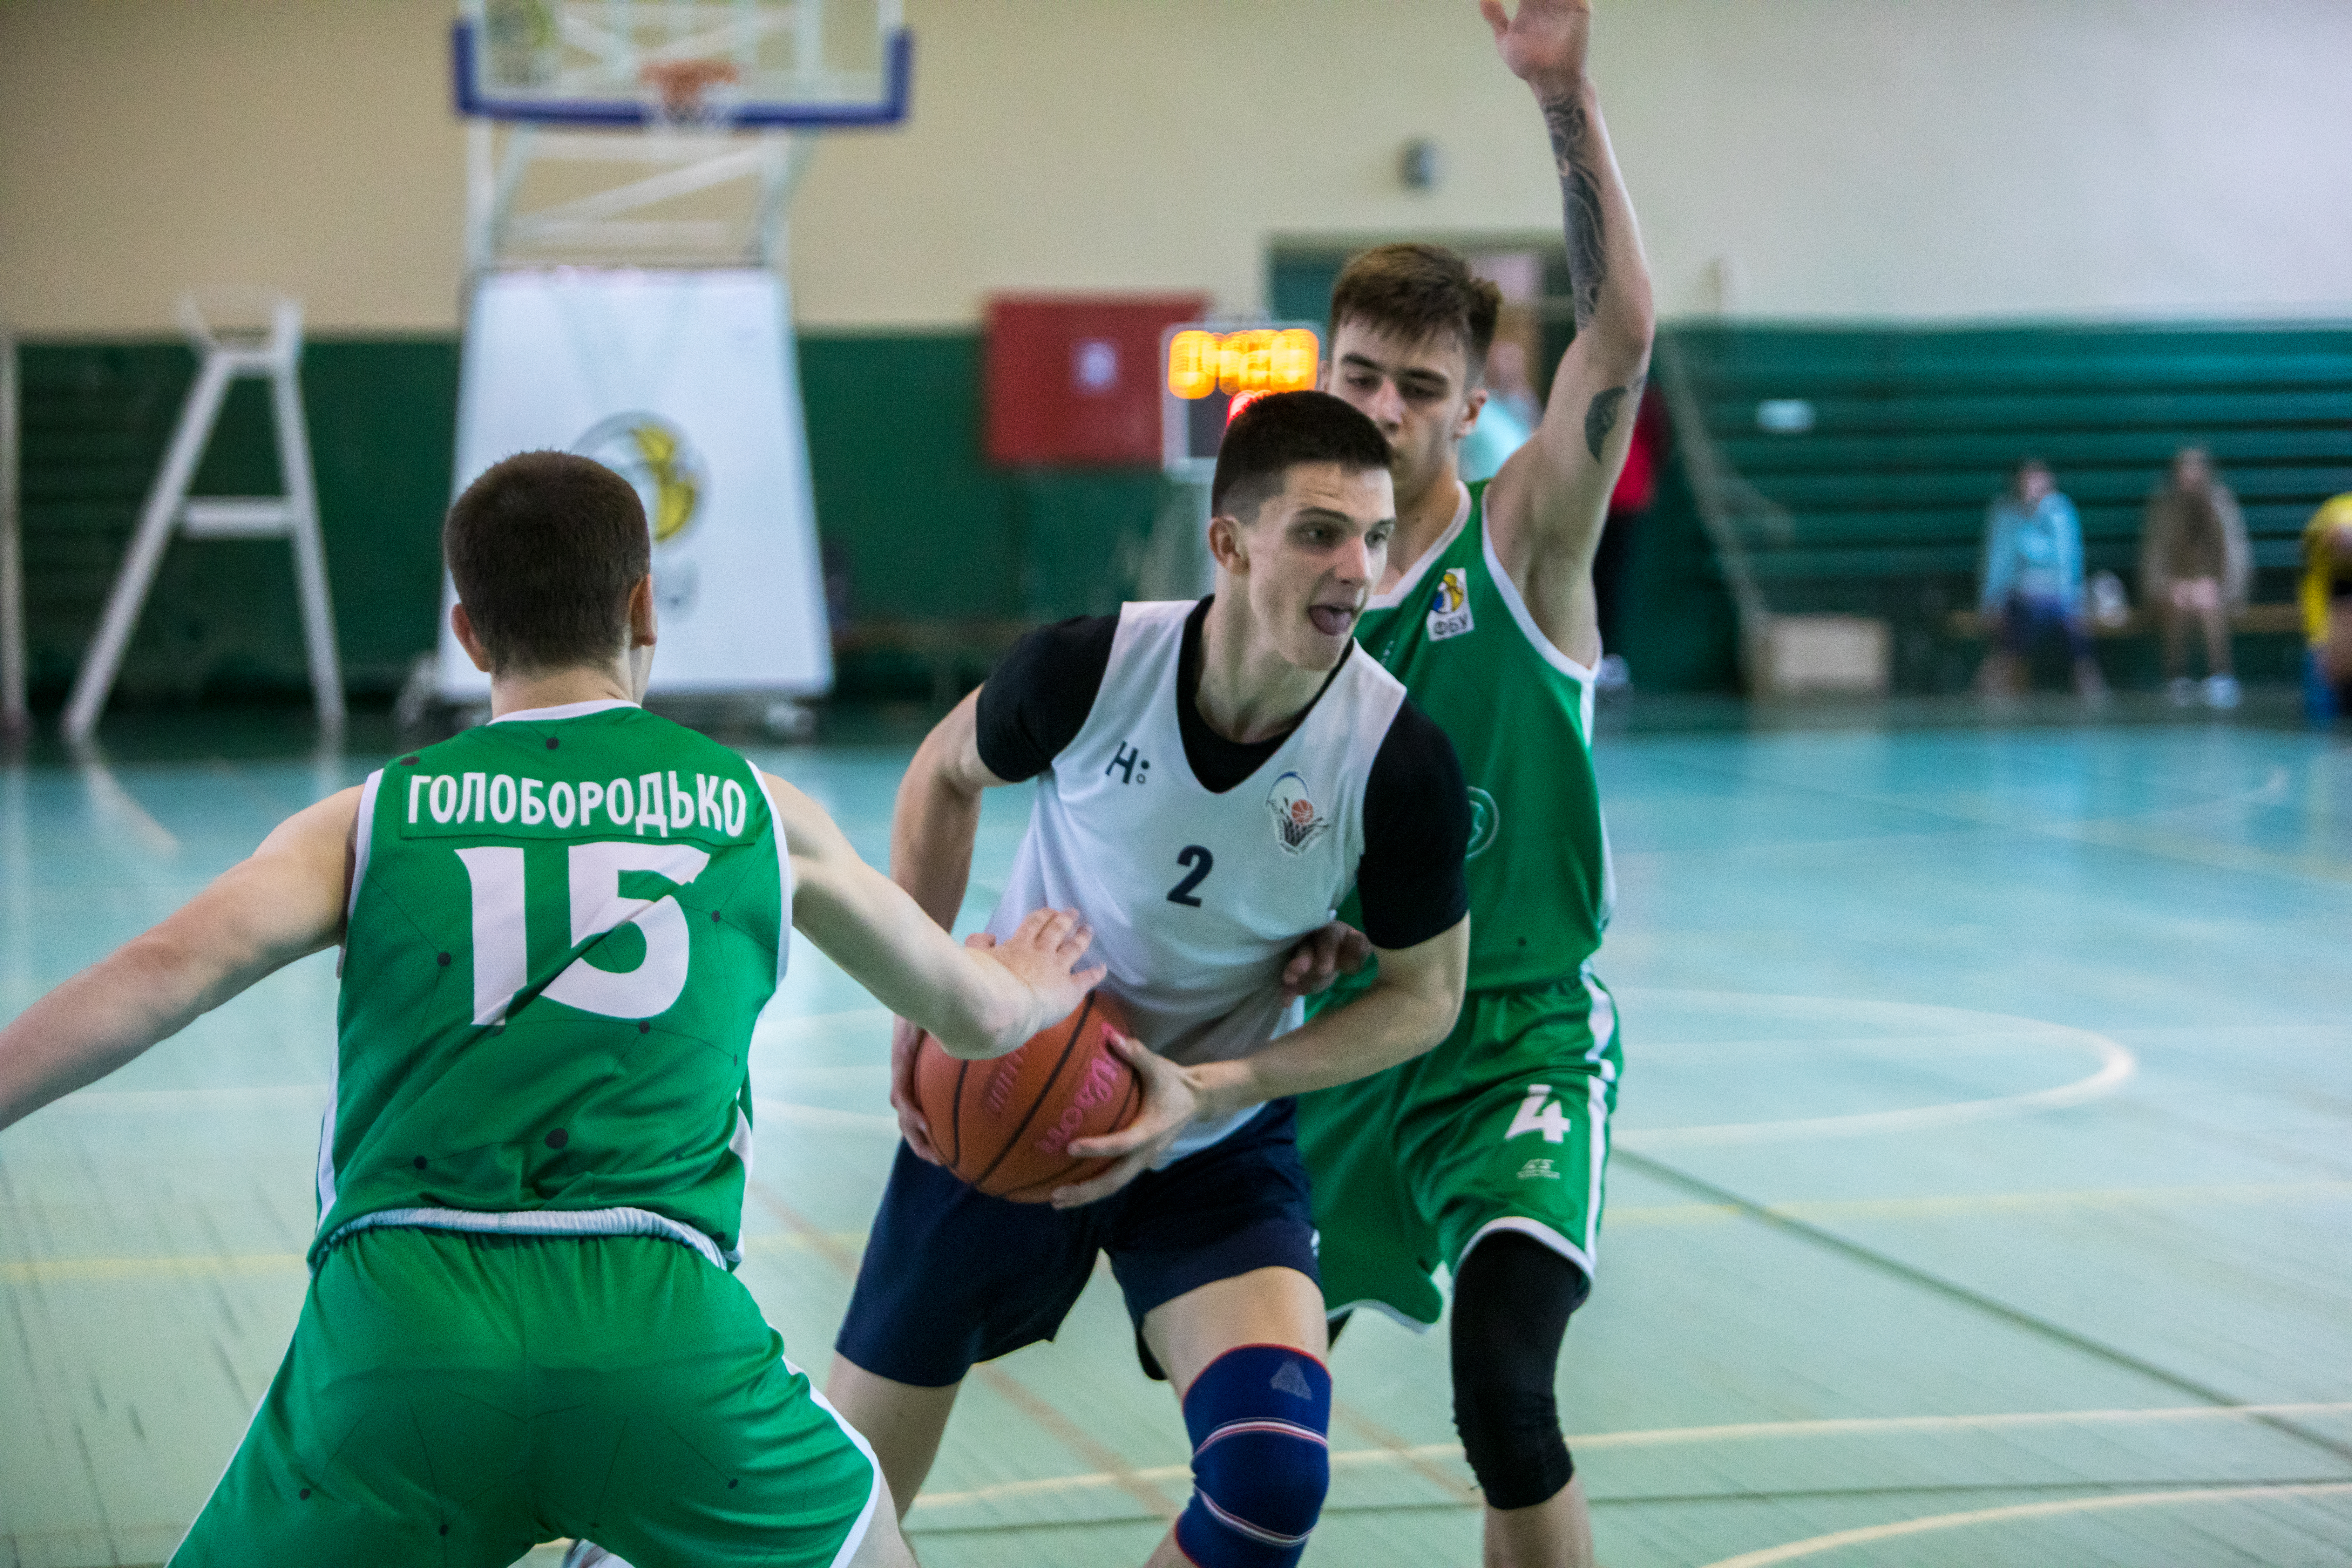 КІВС-Політехніка завоювала п'яте місце в чоловічій Молодіжній лізі, обігравши МБАШ: фотогалерея